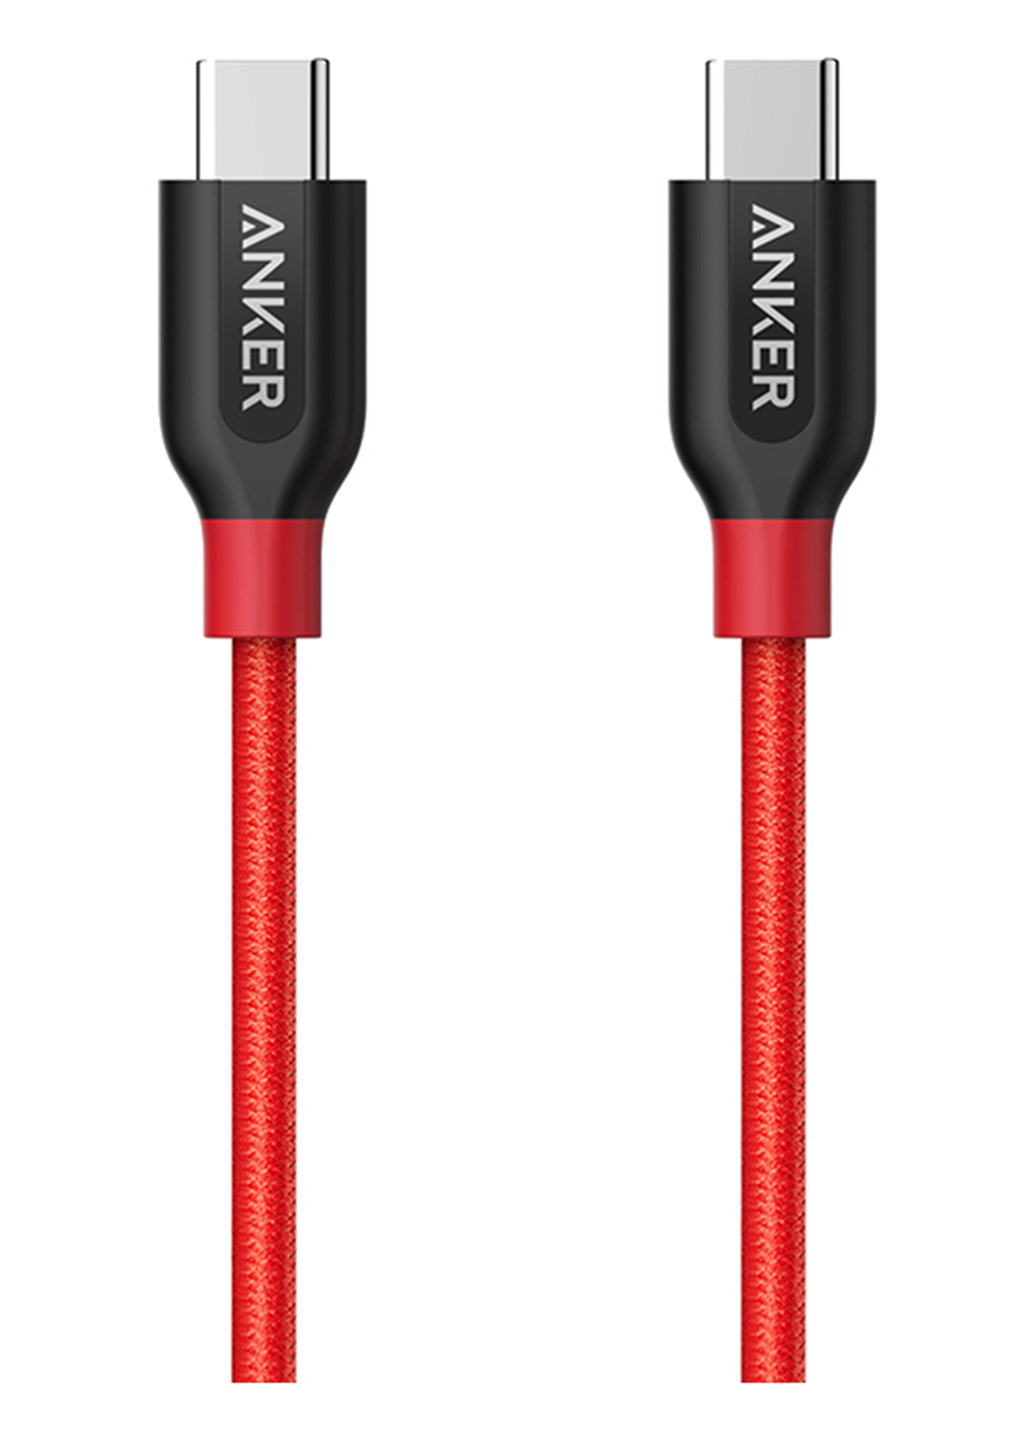 Кабель Powerline + USB-C to USB-C 2.0 - 0.9м V3 (Red) Anker powerline+ usb-c to usb-c 2.0 - 0.9м v3 (red) (134496696)